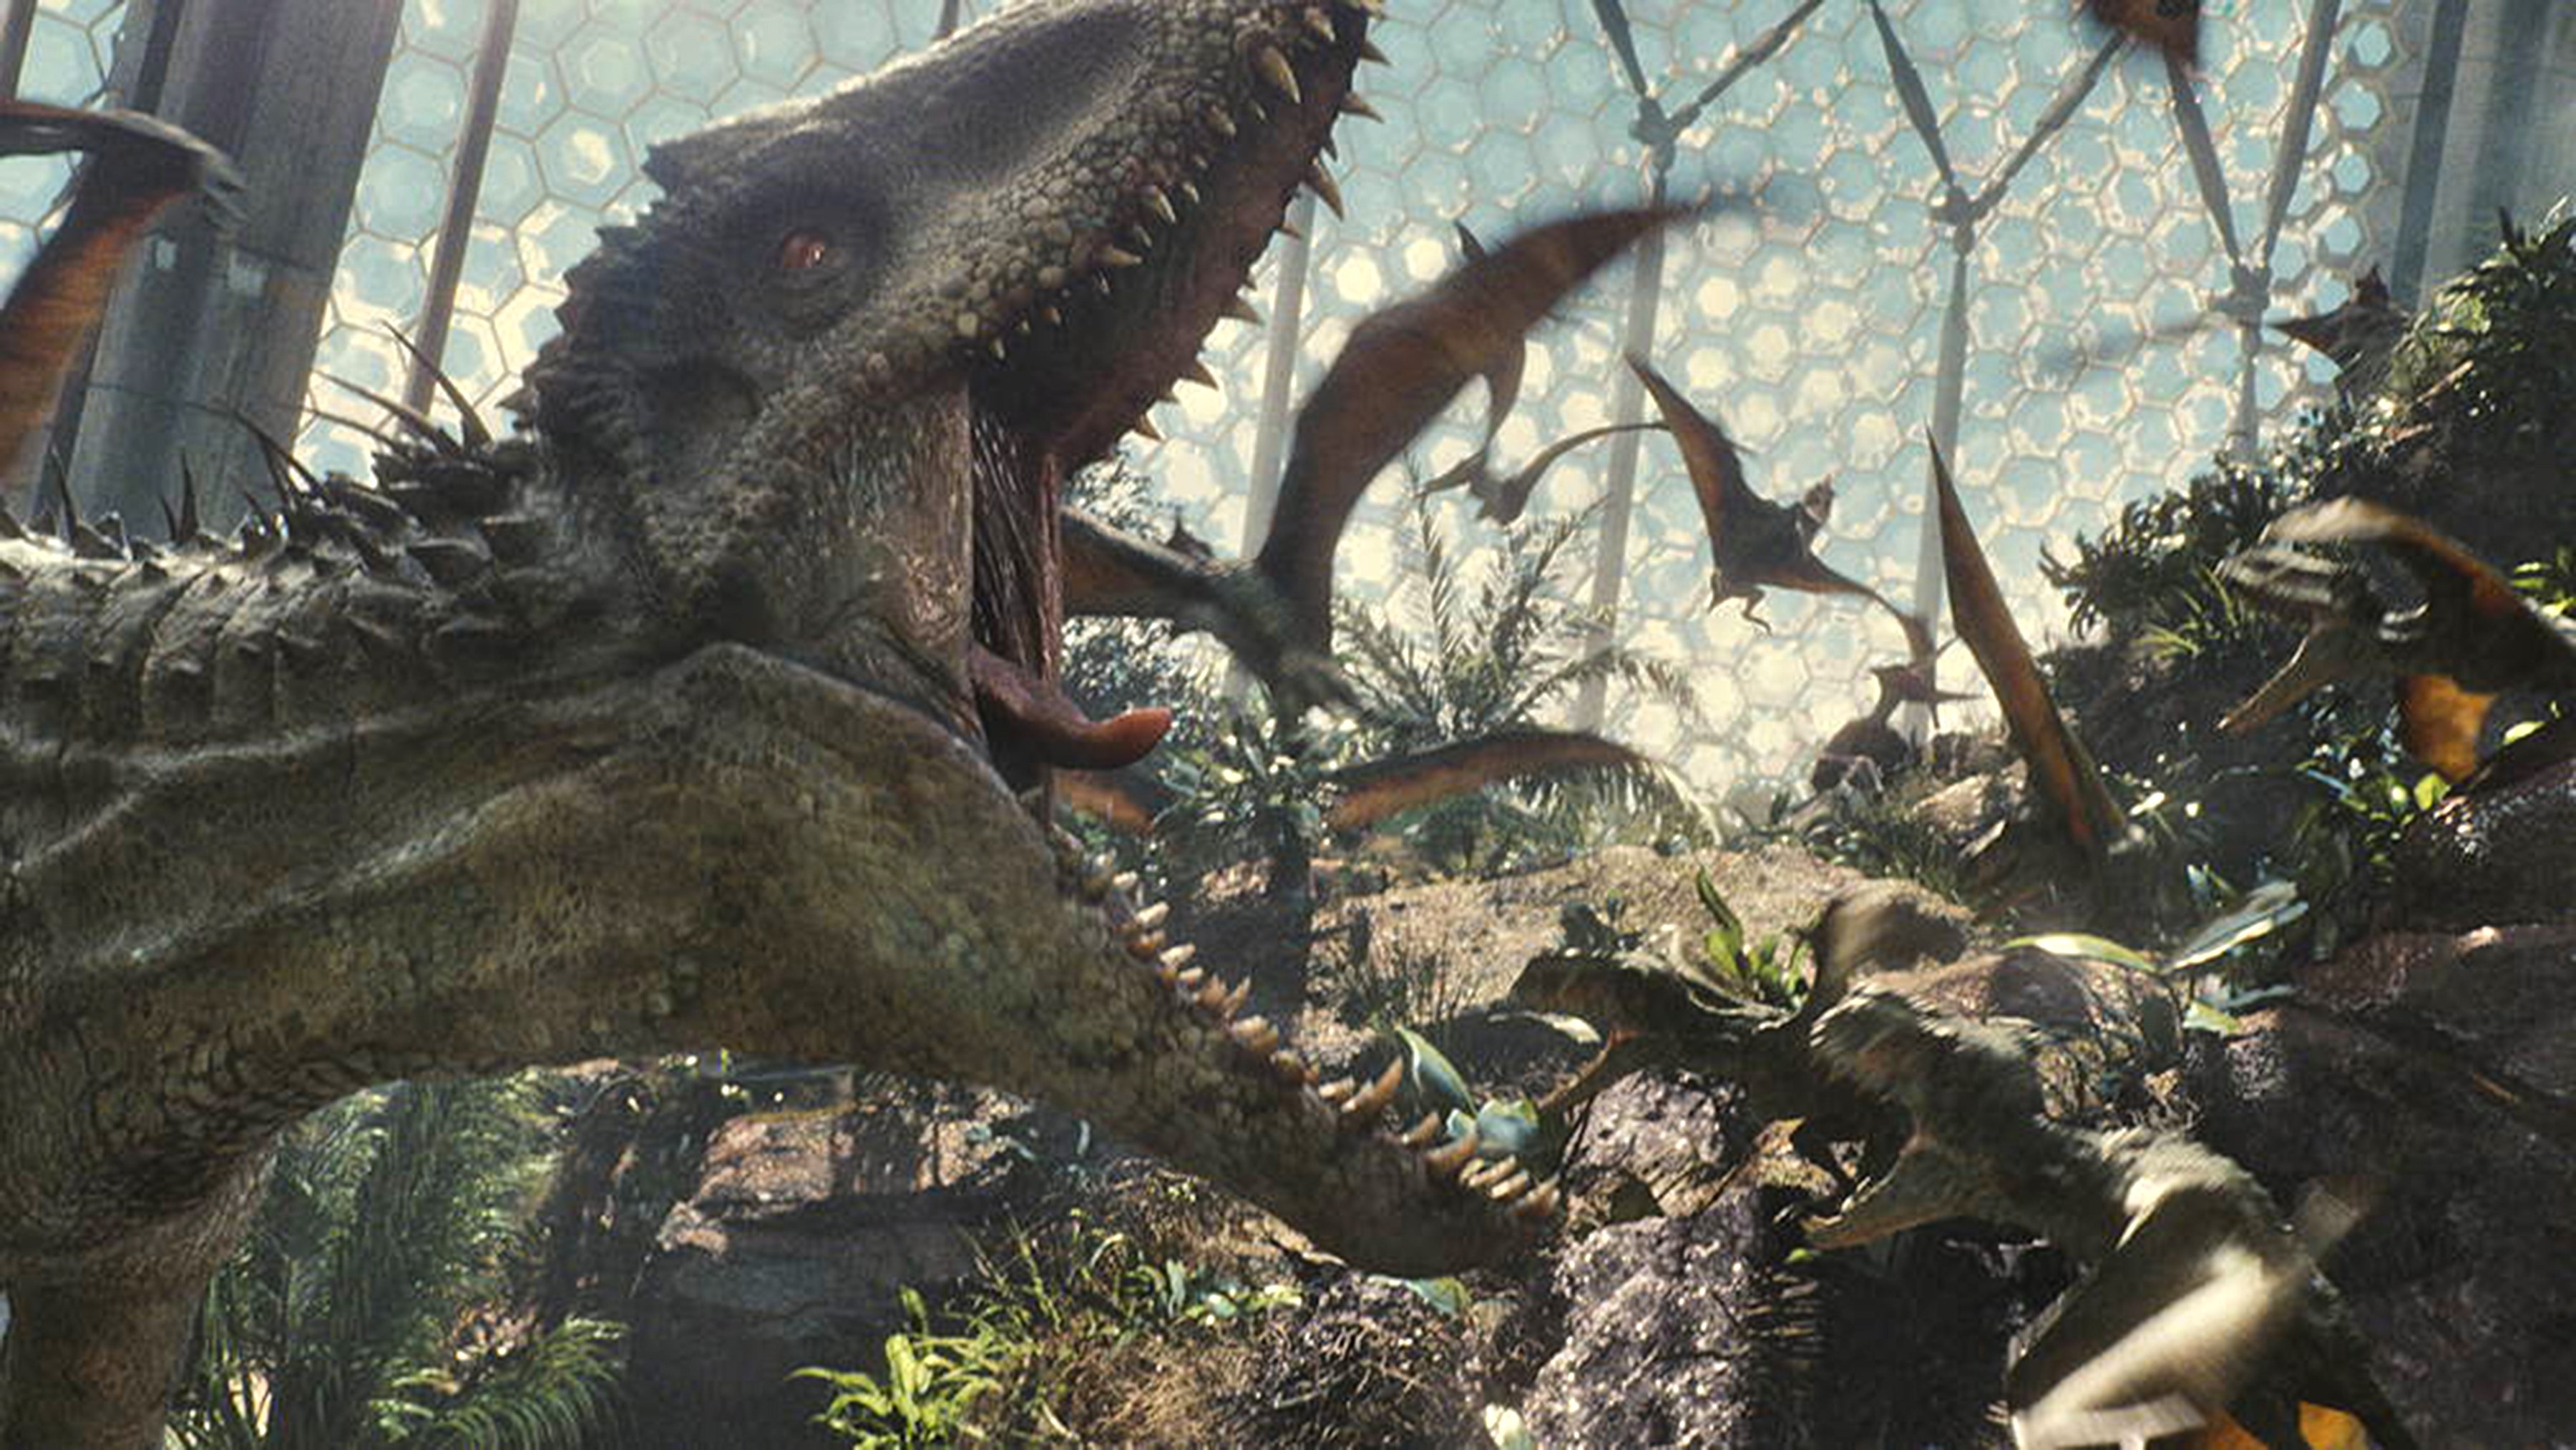 Jurassic World  Opens on June 11, 2015